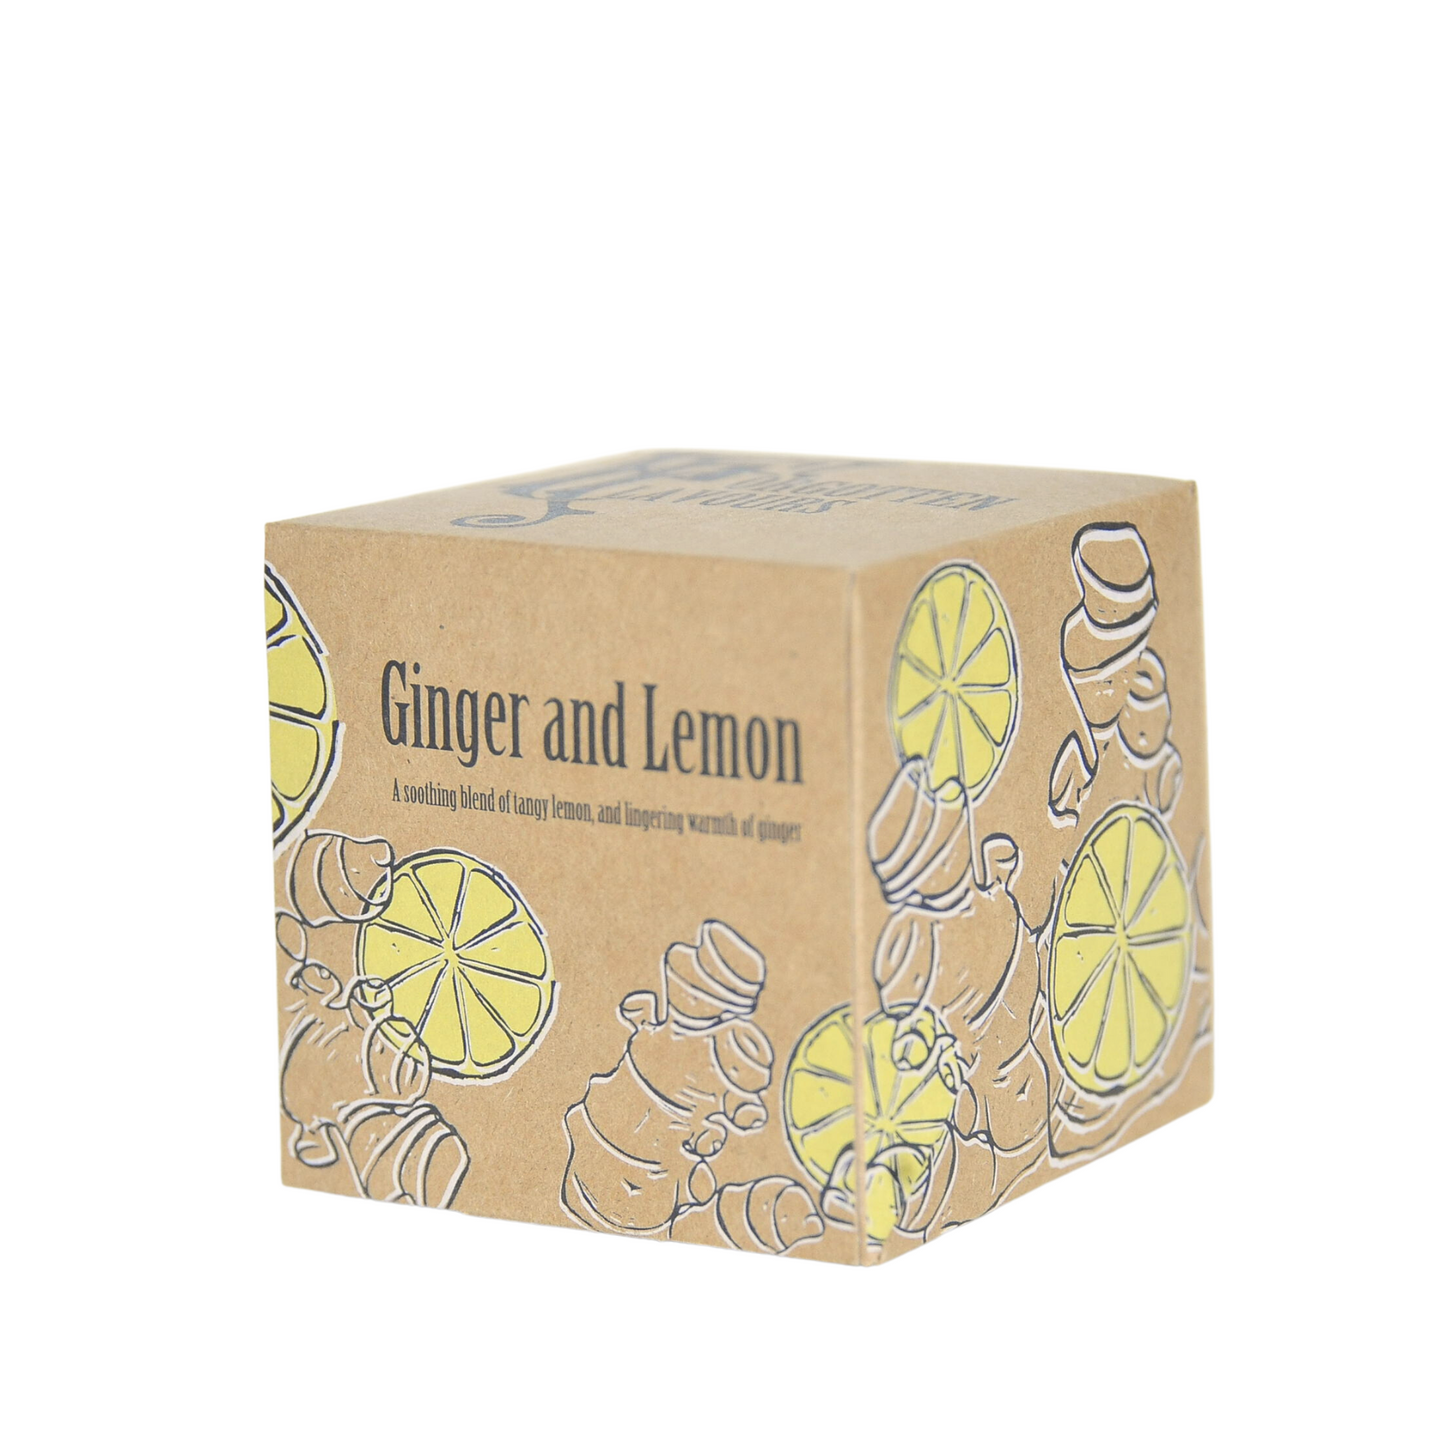 Ginger and Lemon - Pate de Fruit